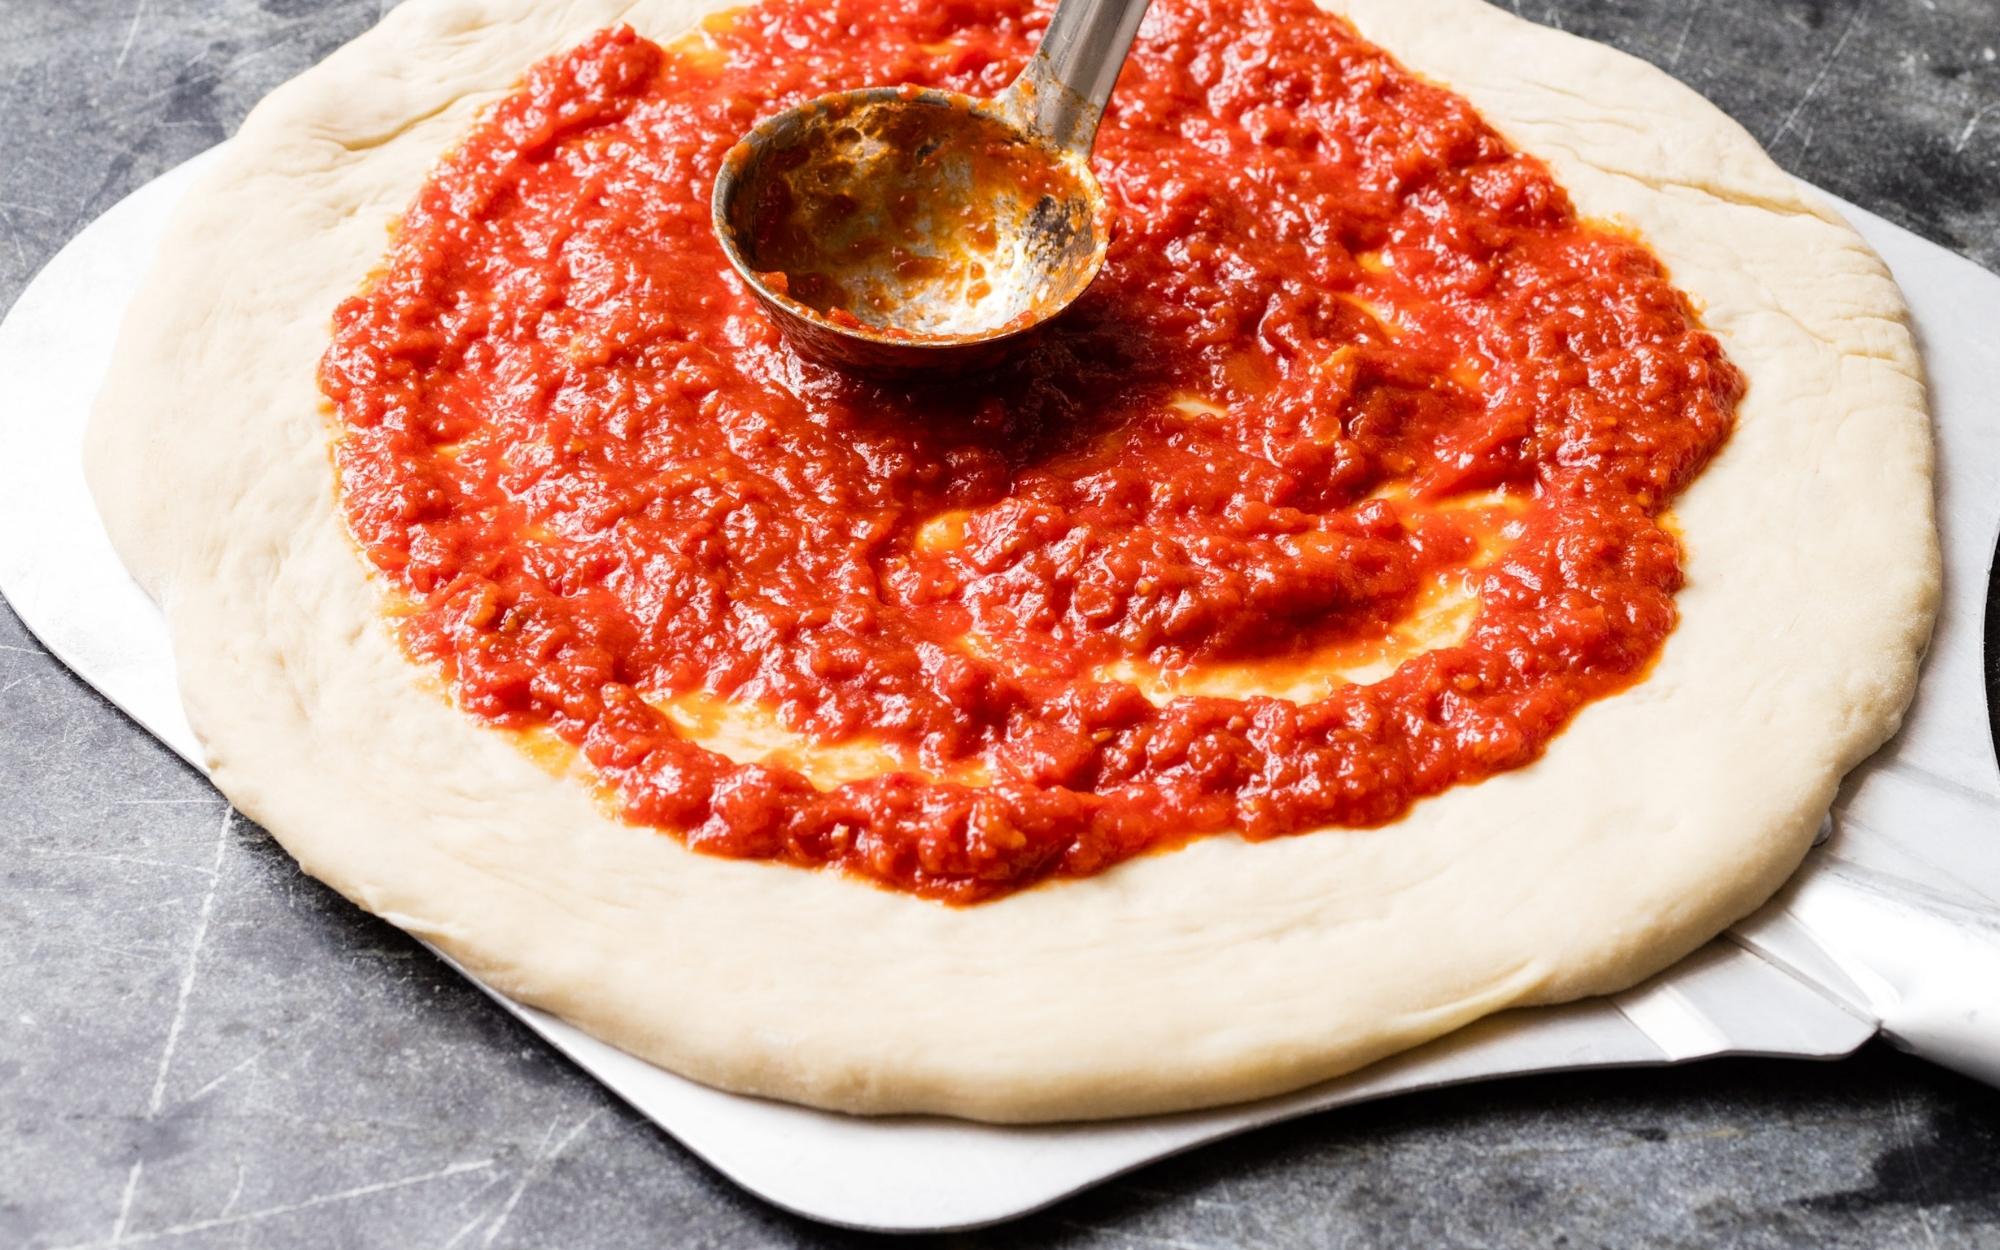 Naminio itališko pomidorų padažo paslaptis